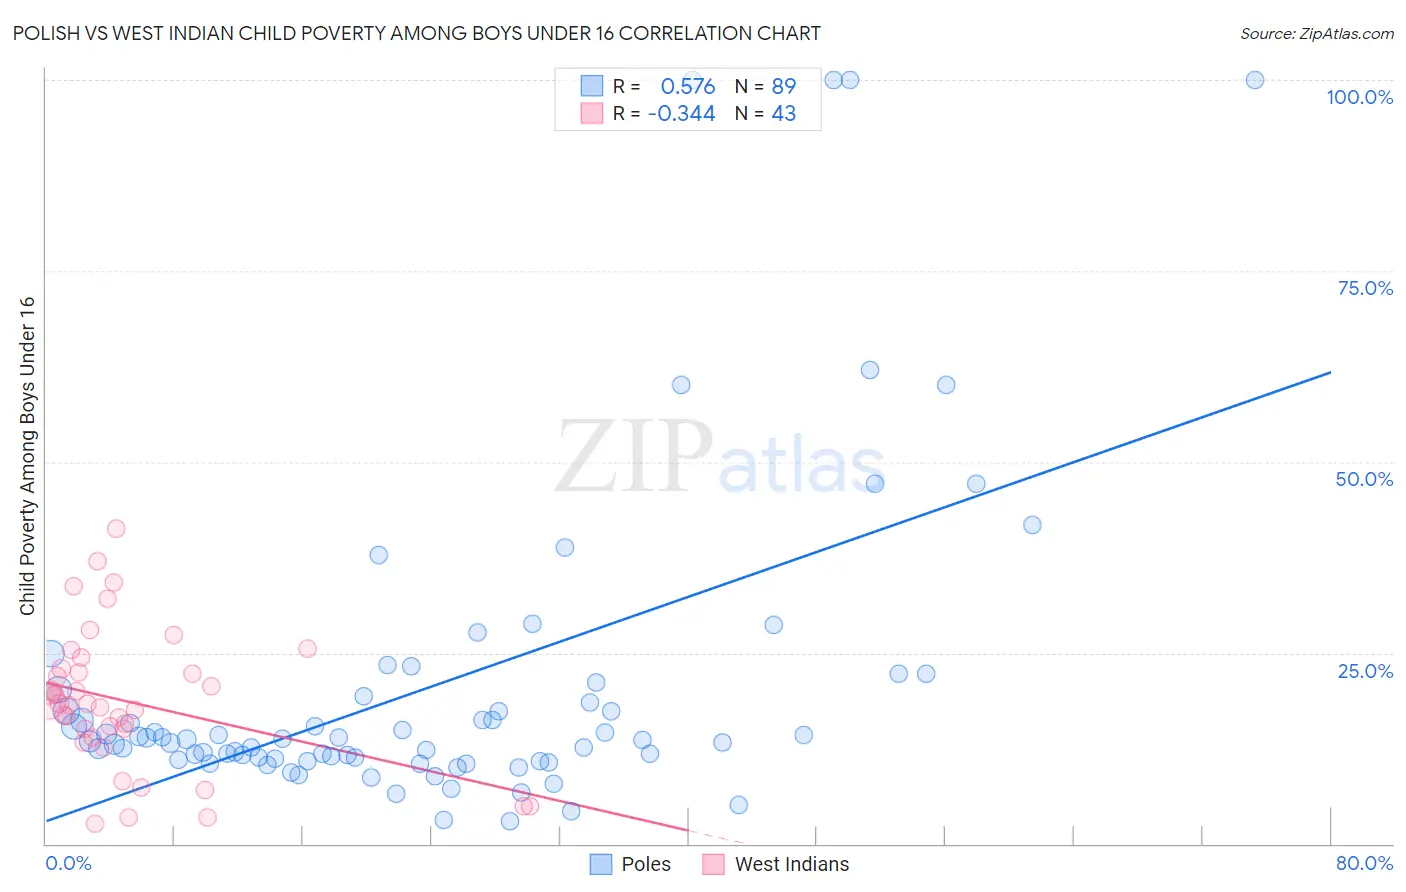 Polish vs West Indian Child Poverty Among Boys Under 16